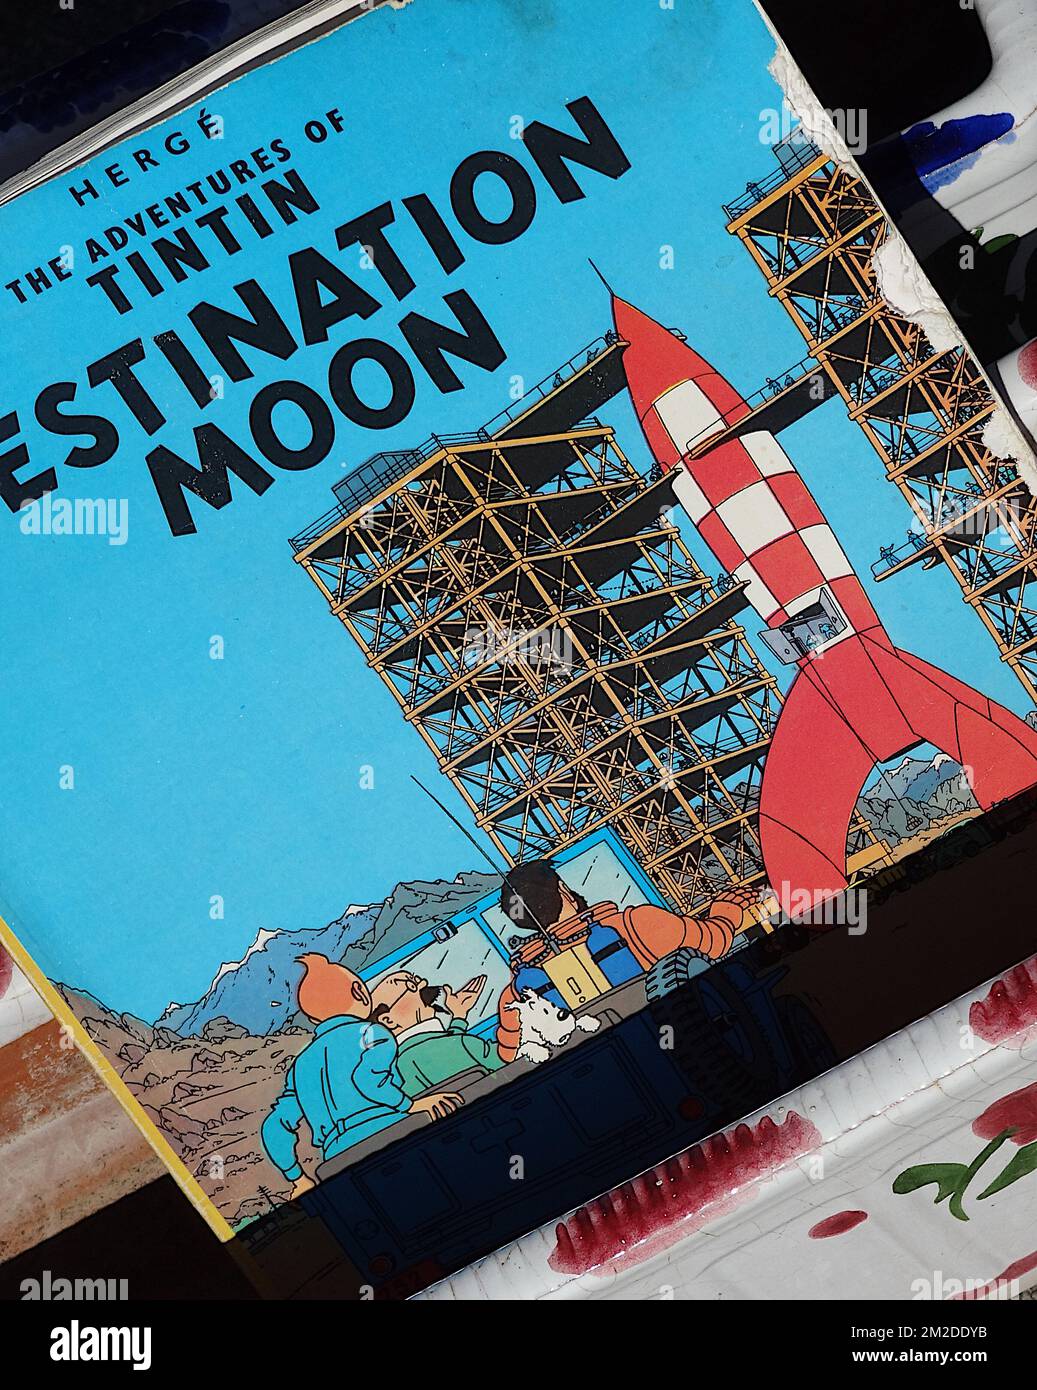 Comics Tintin | Bandes dessinées Tintin 03/03/2018 Stock Photo